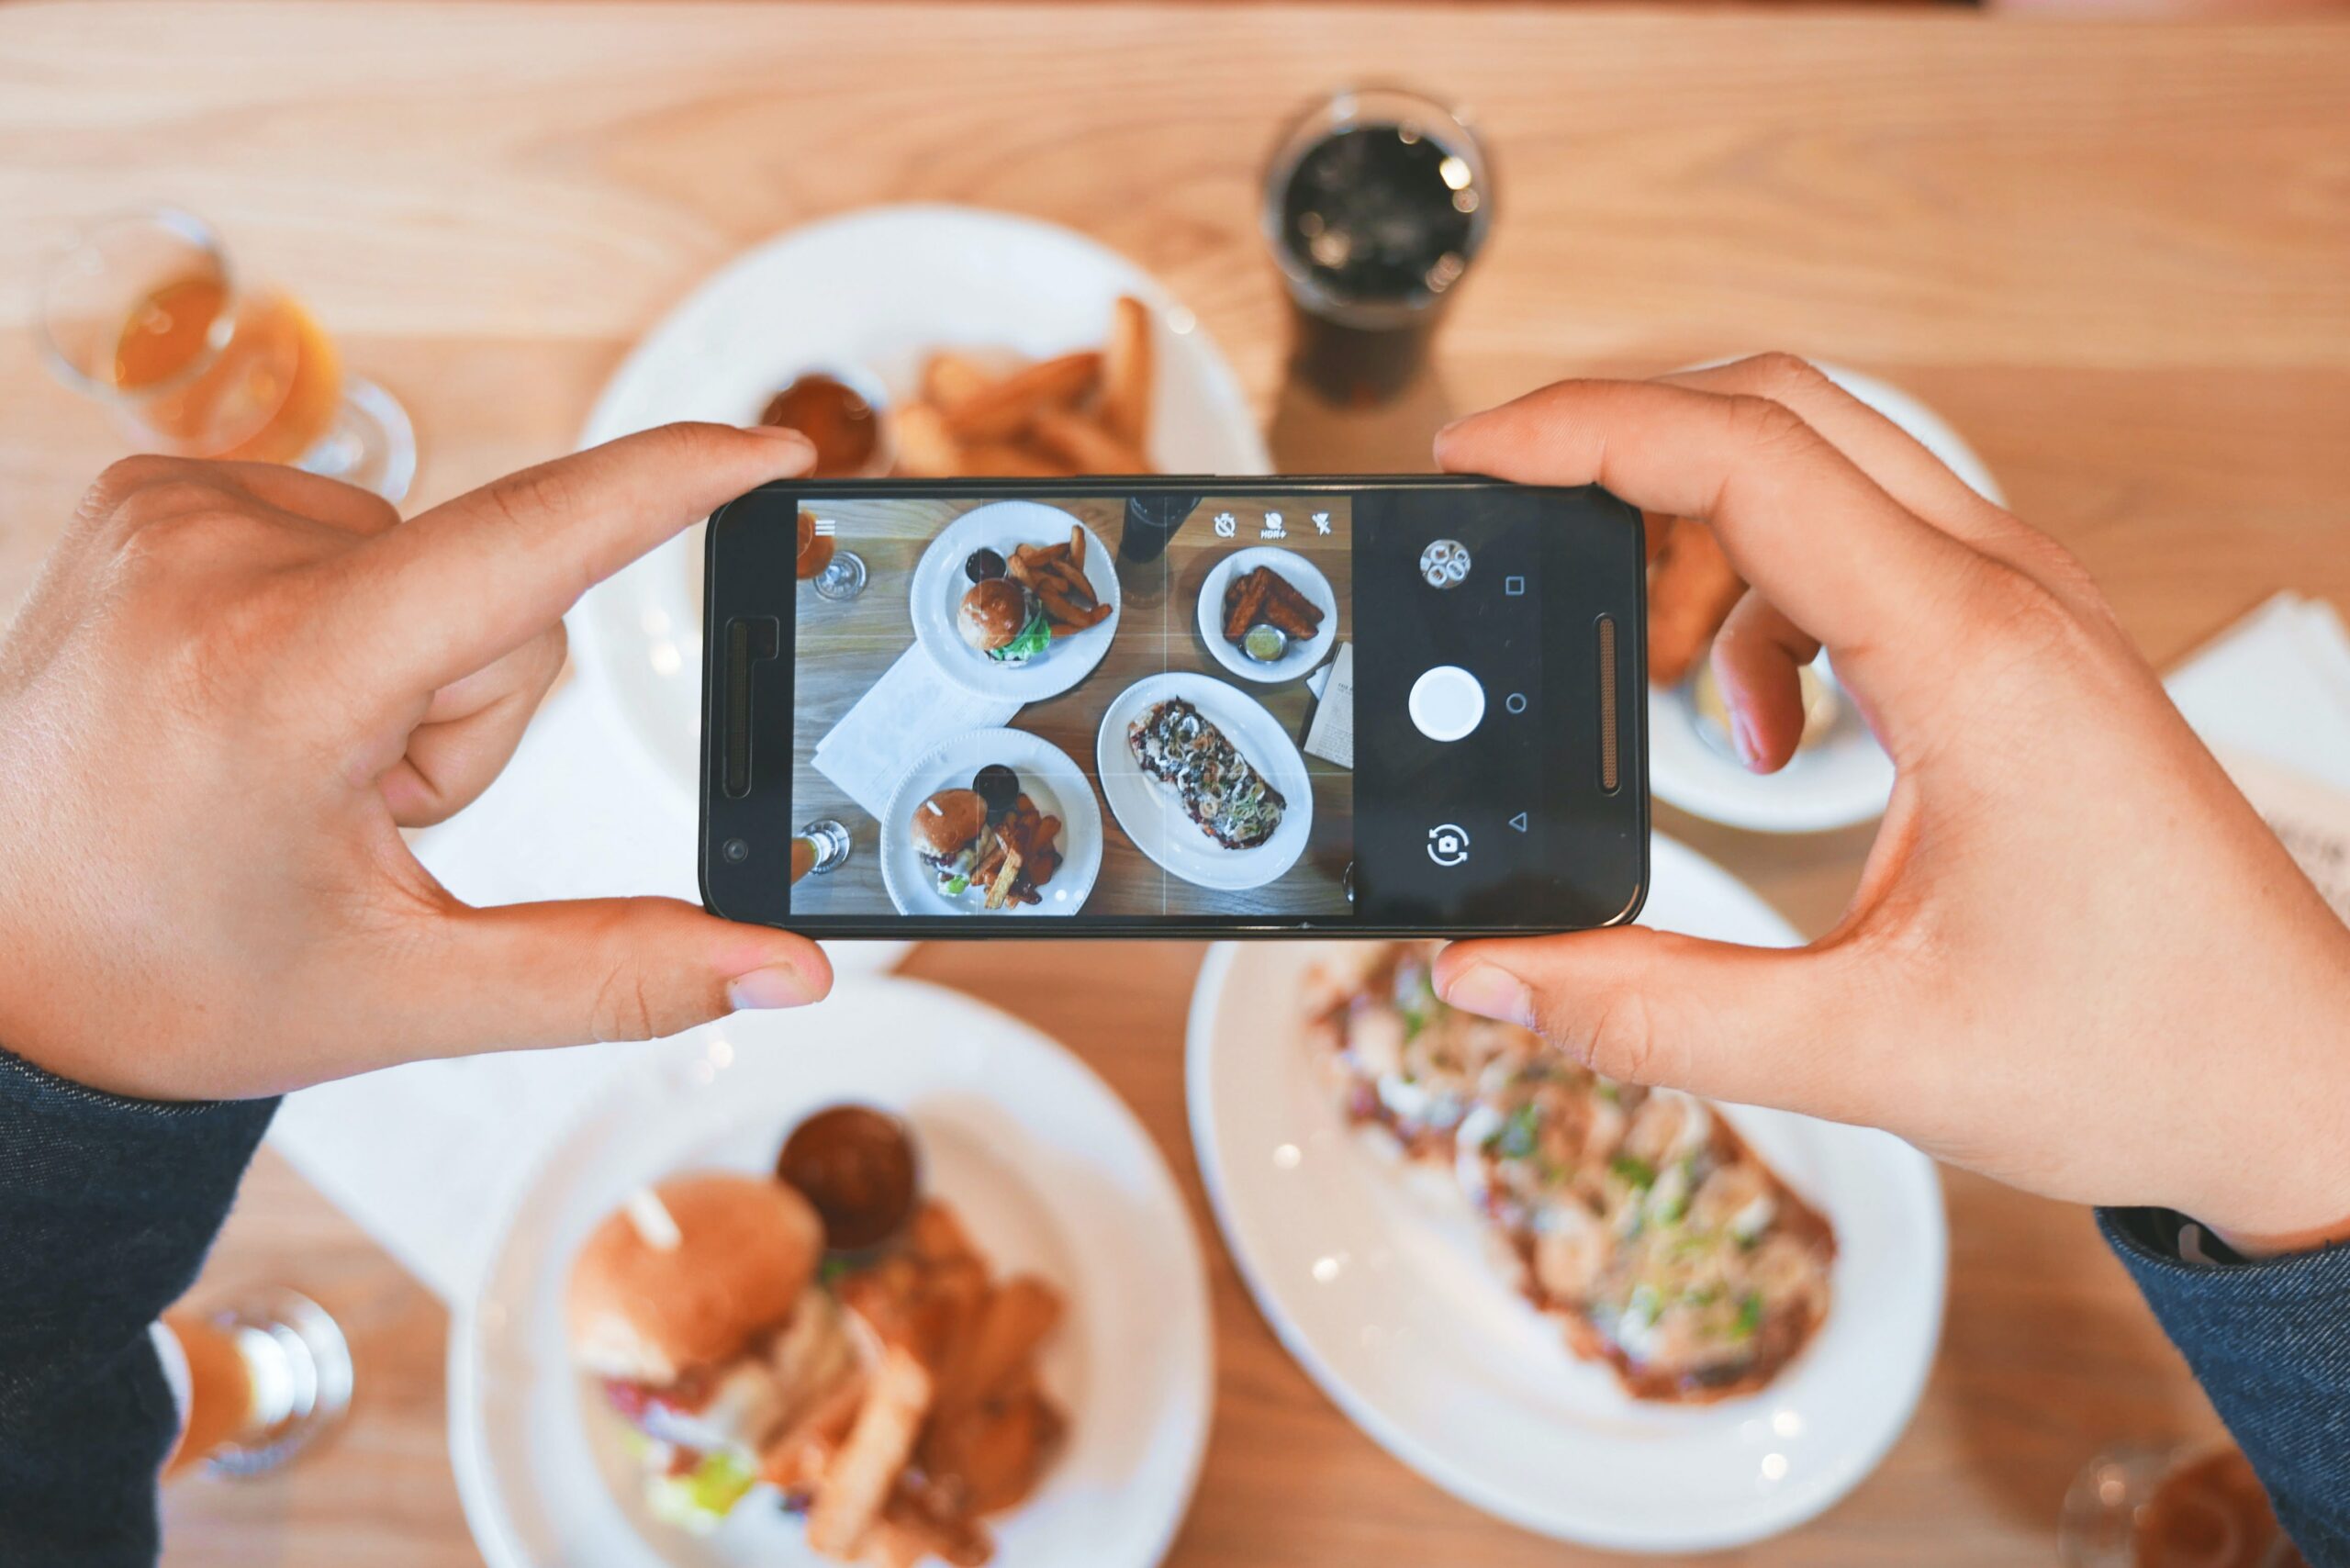 Photographié des plats avec le téléphone - Les 8 tendances social media en 2021 - L'agence Com' Kani